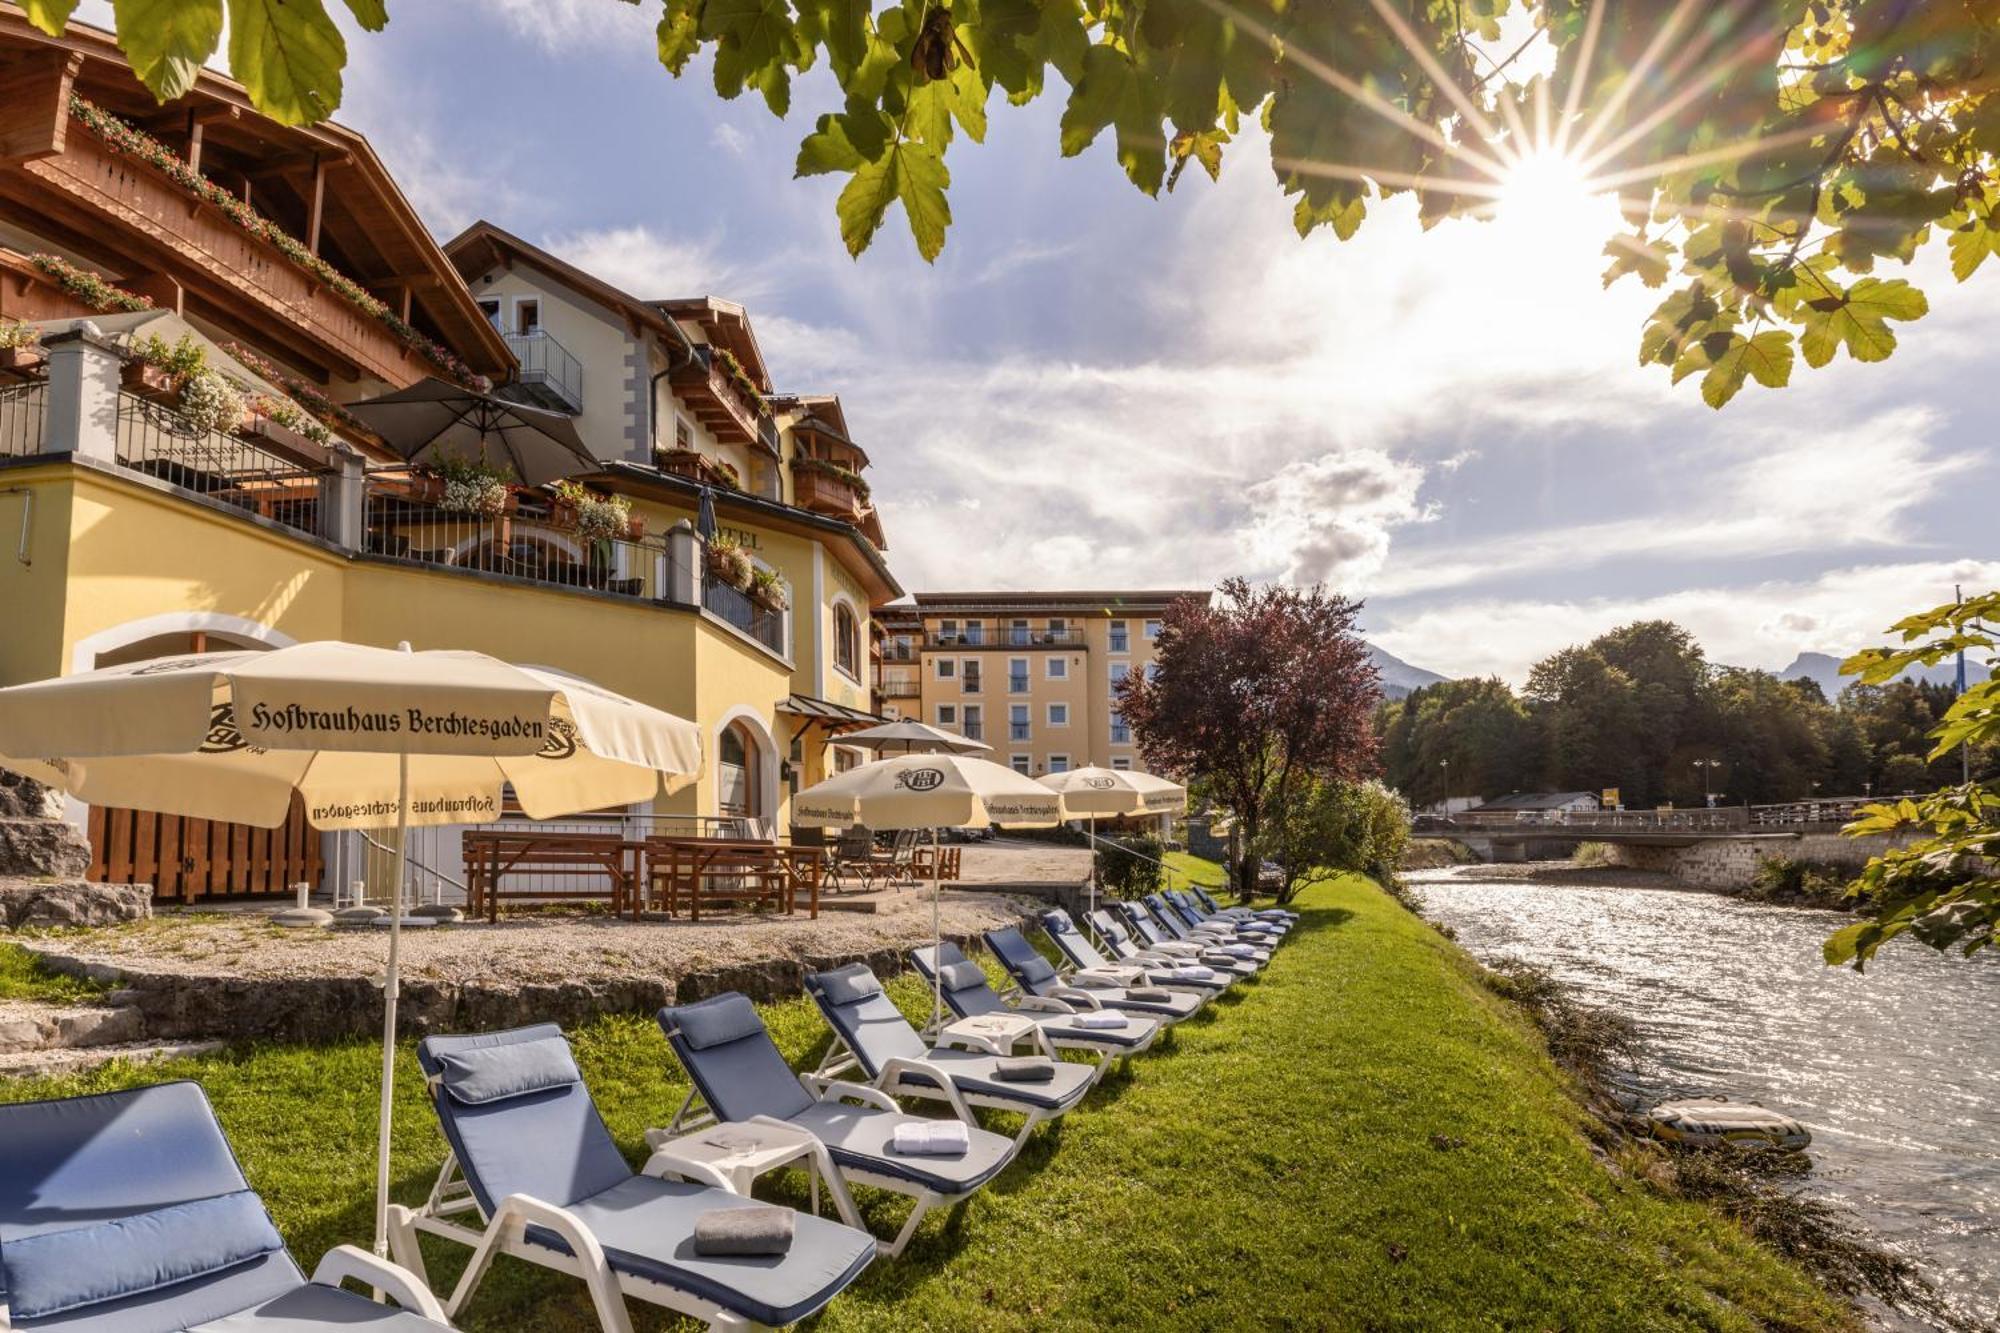 Hotel Grunberger Superior Berchtesgaden Exterior foto